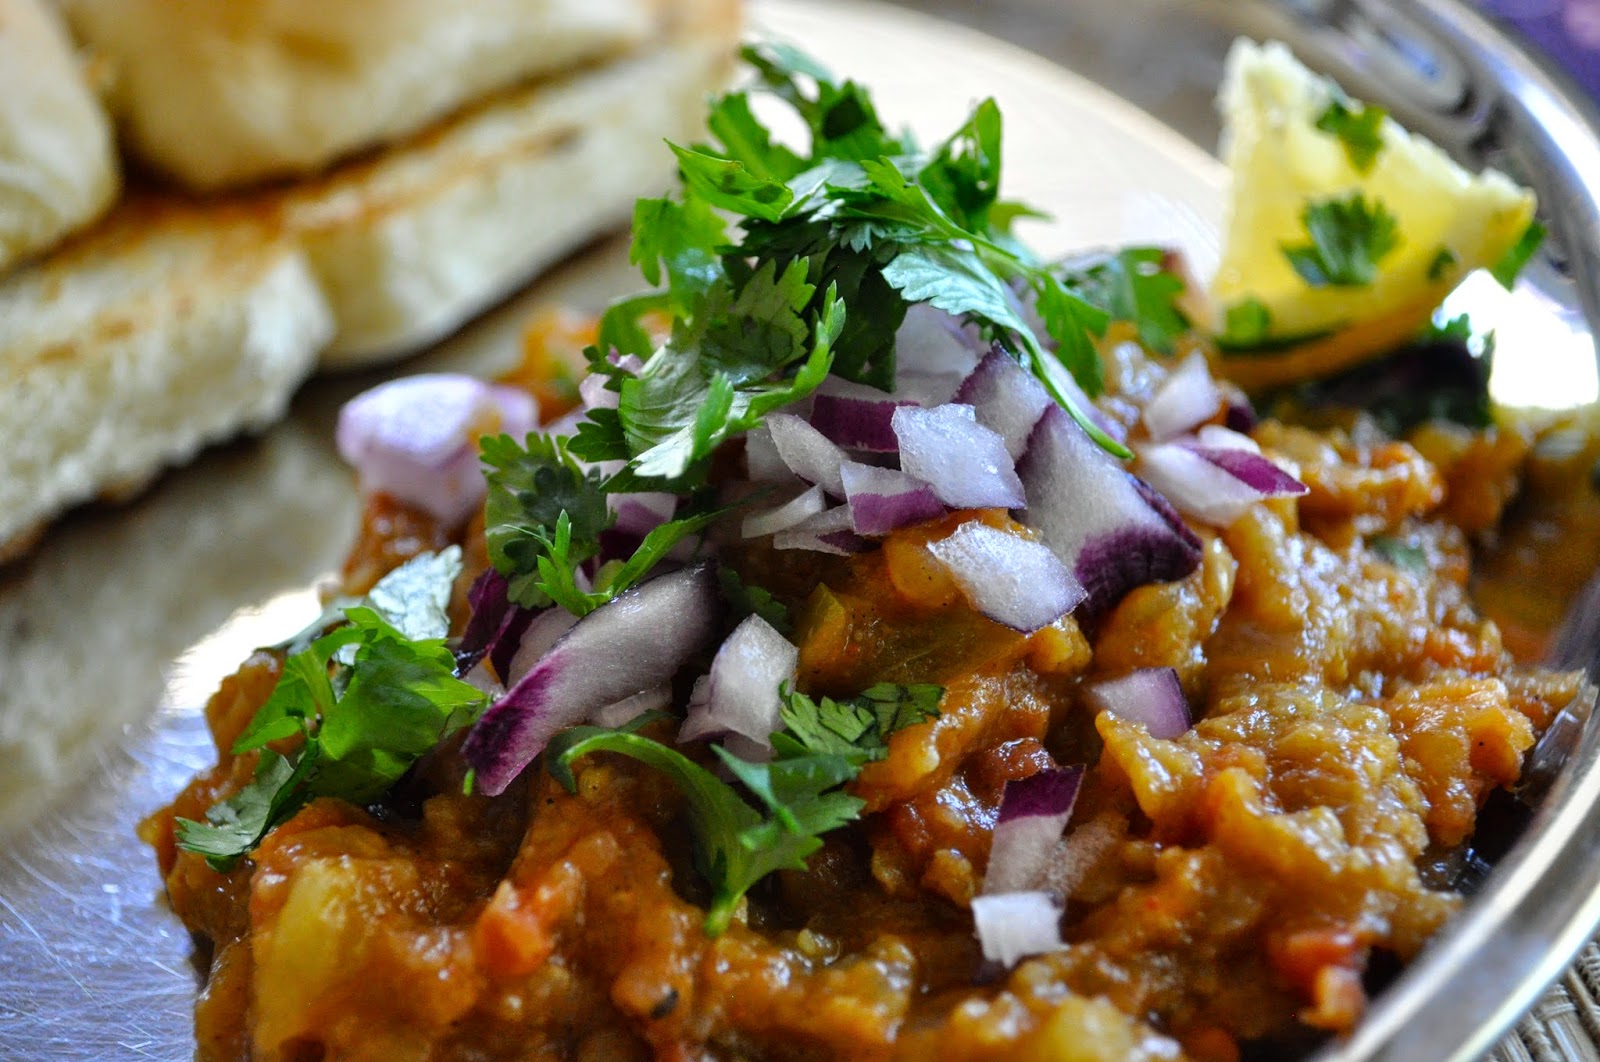 Cooking with Meena: Mumbai Pav Bhaji – recipe from the back of a box